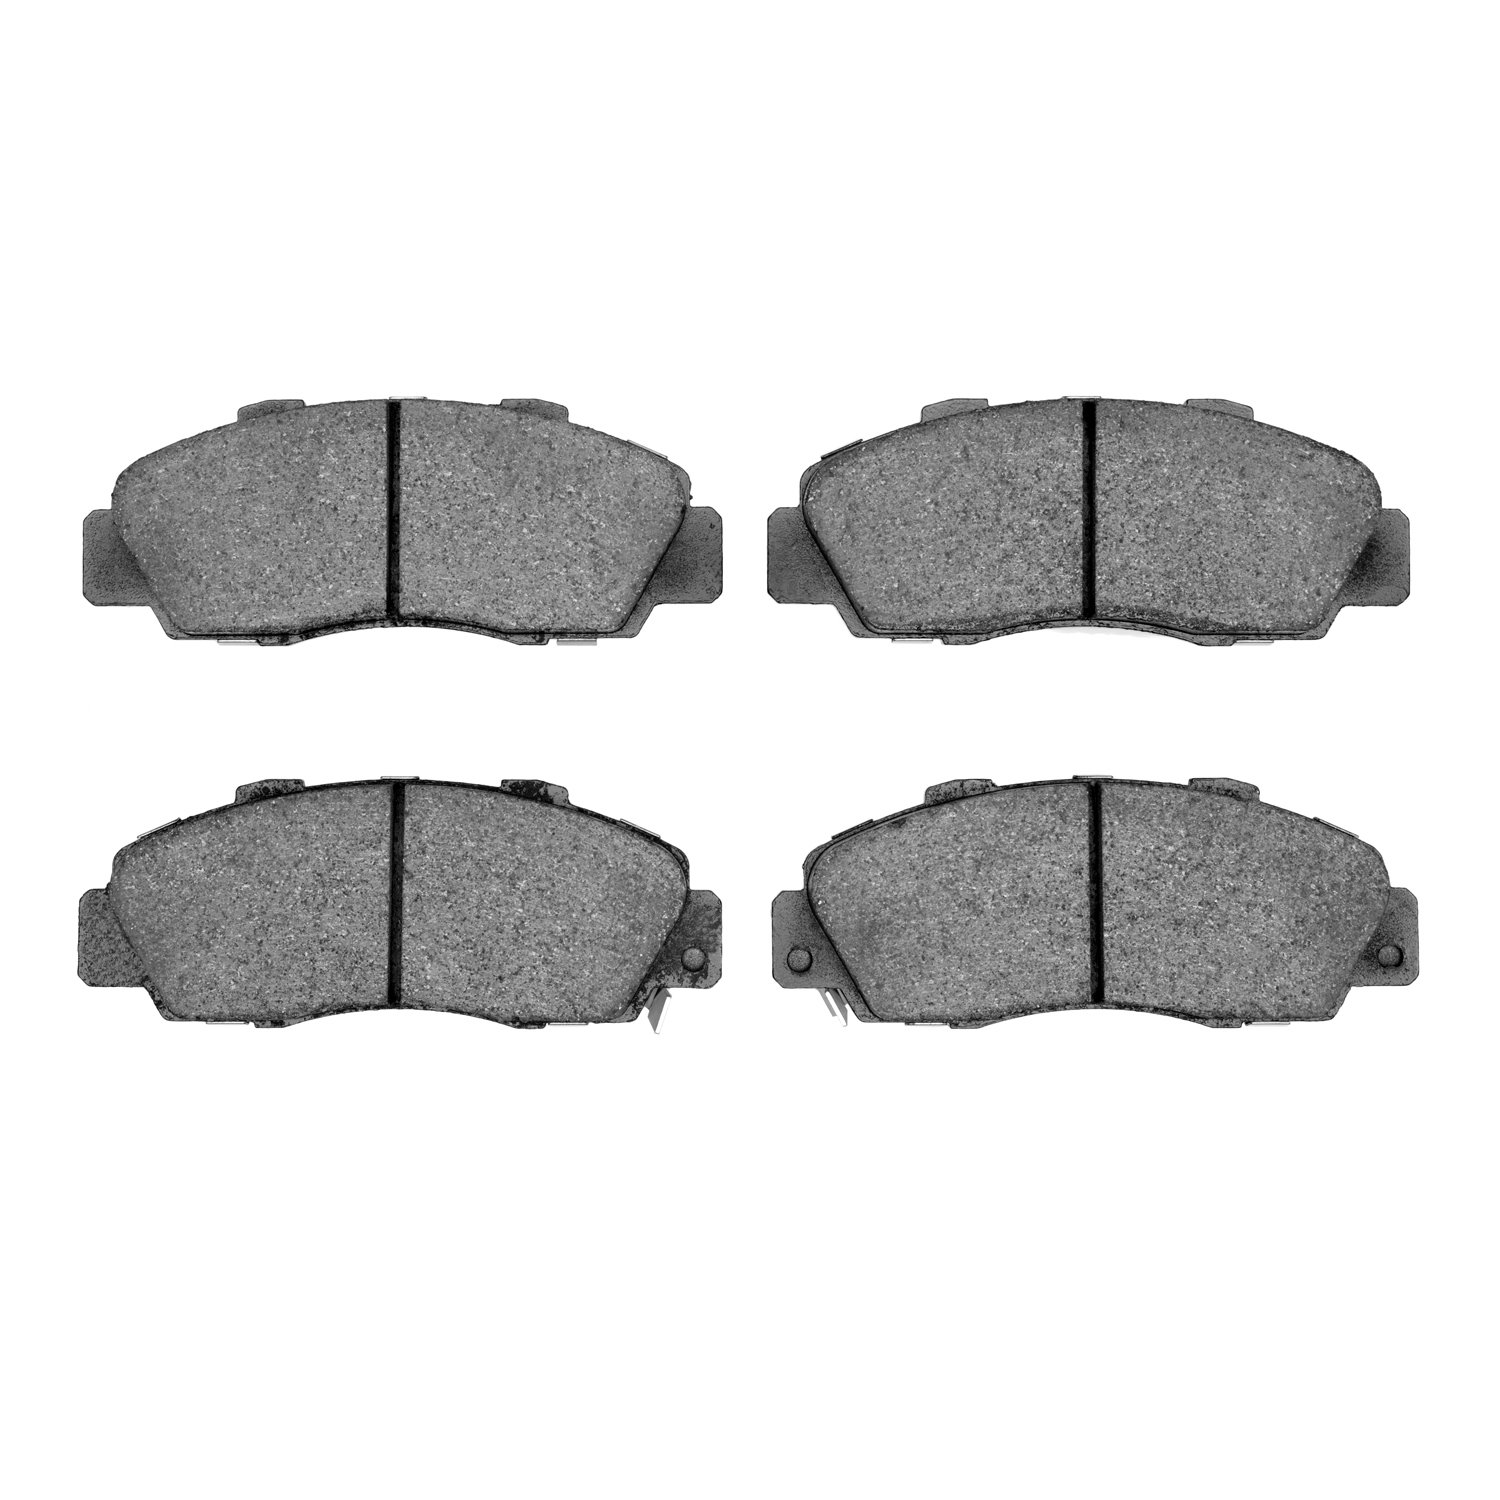 Ceramic Brake Pads, 1991-2005 Fits Multiple Makes/Models, Position: Front